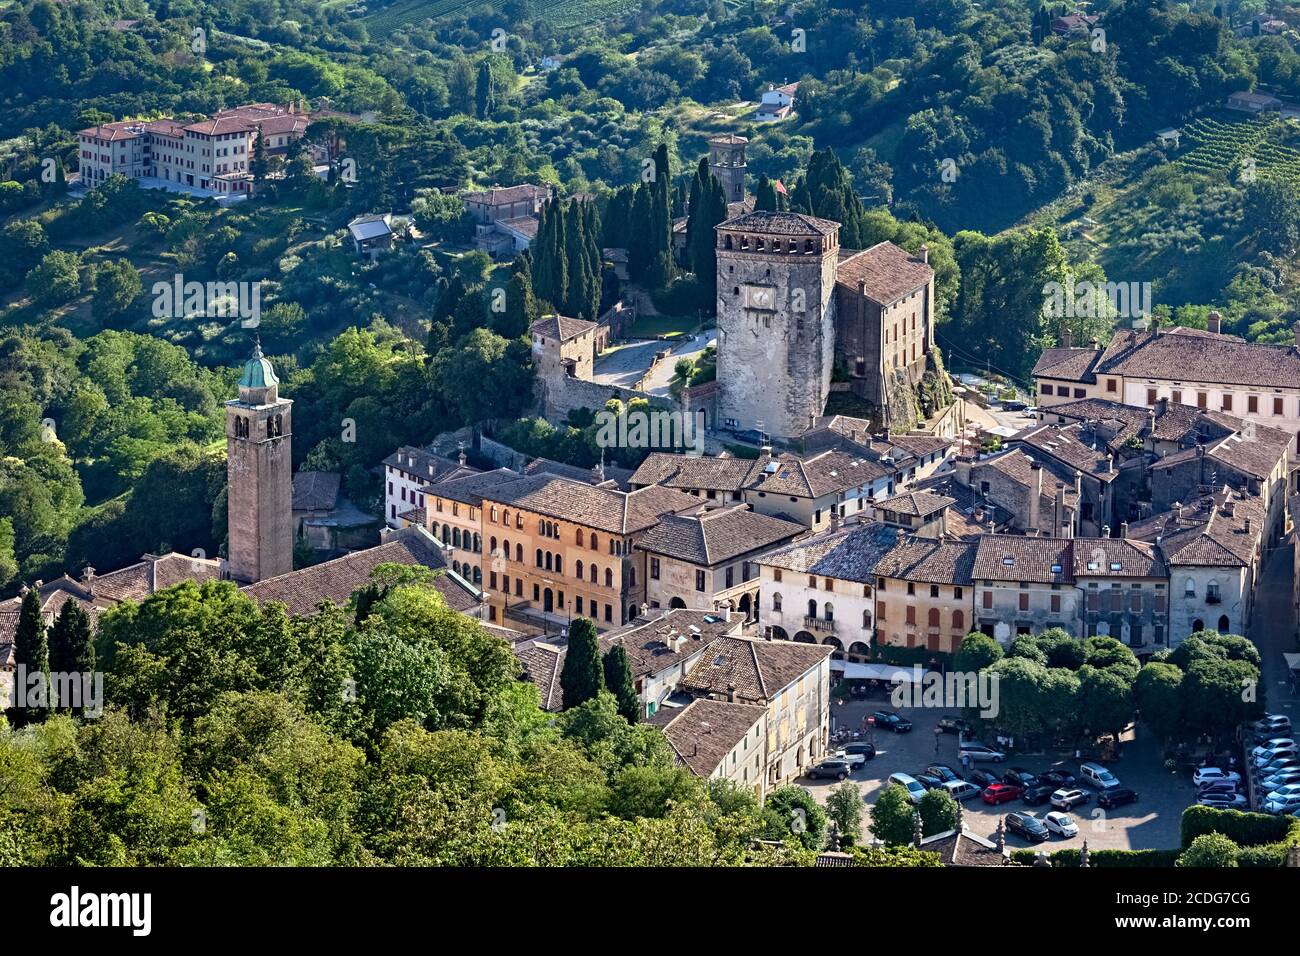 Le village et le château médiéval d'Asolo. Province de Trévise, Vénétie, Italie, Europe. Banque D'Images